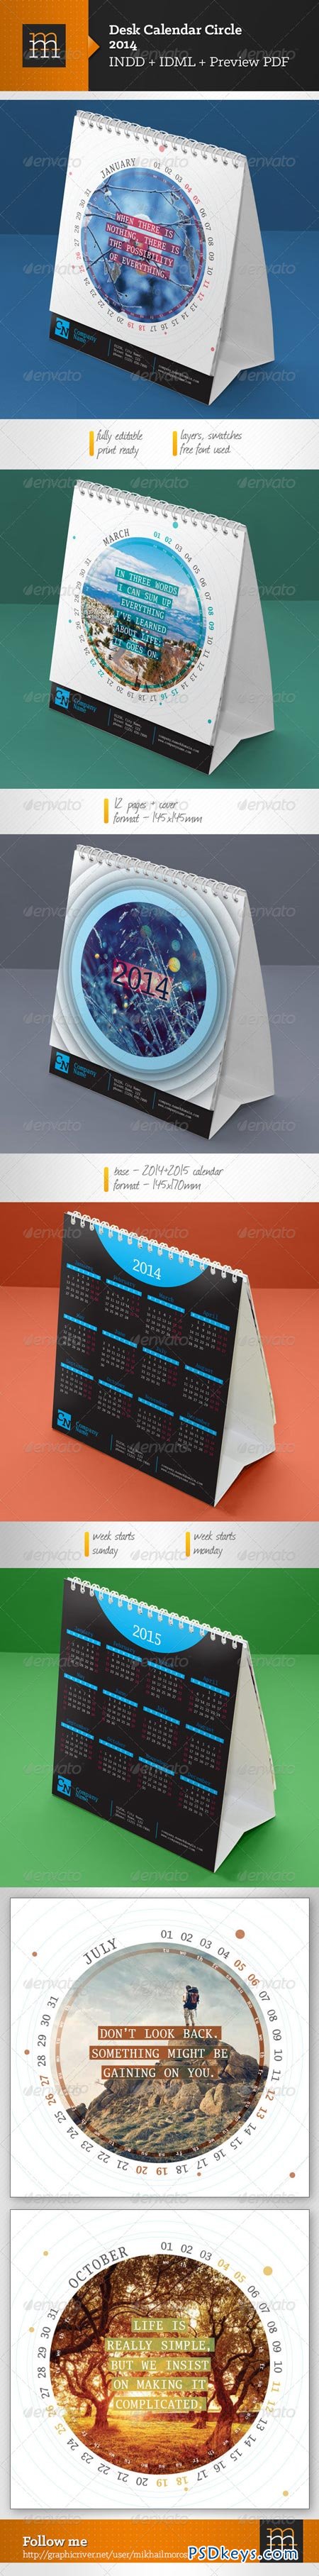 Desk Calendar-4 2014 Circle 6402448